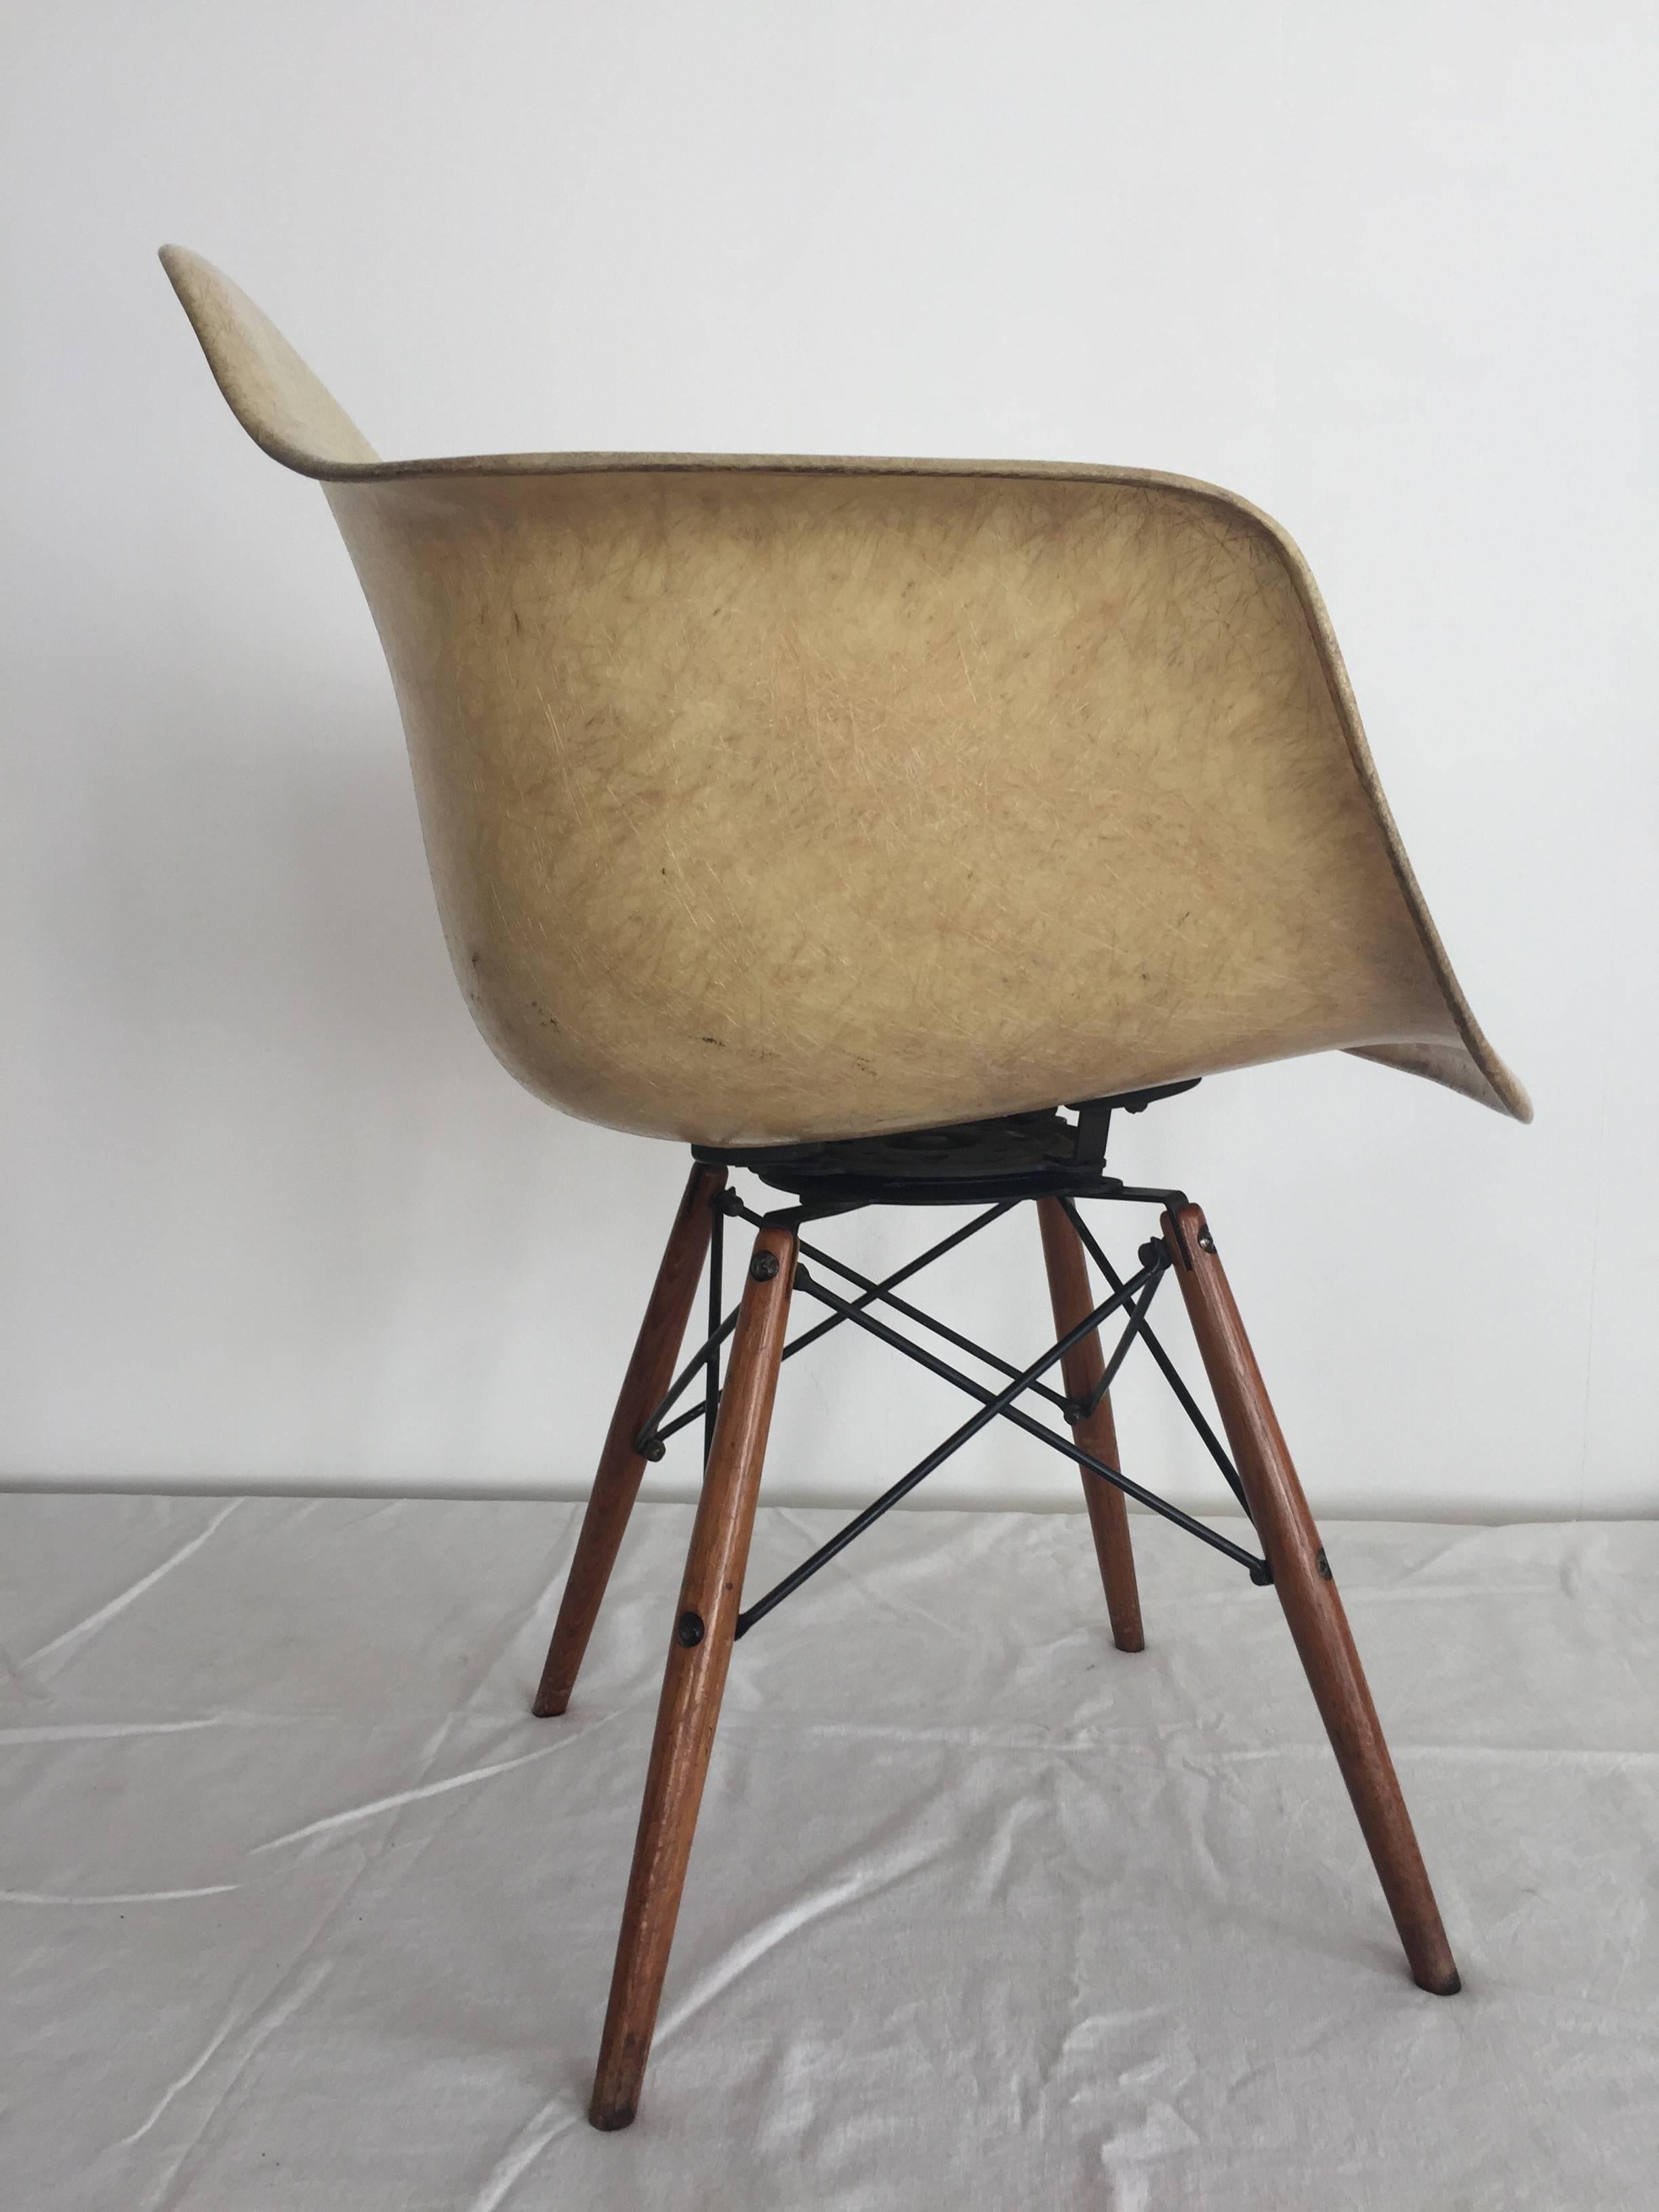 Première production, première génération 1949-1950 Zenith Herman Miller, Charles Eames PAW chaise pivotante en corde, couleur gris éléphant, pieds en bouleau / toutes pièces d'origine. La base en forme de goujon porte l'inscription Seng Chicago sur